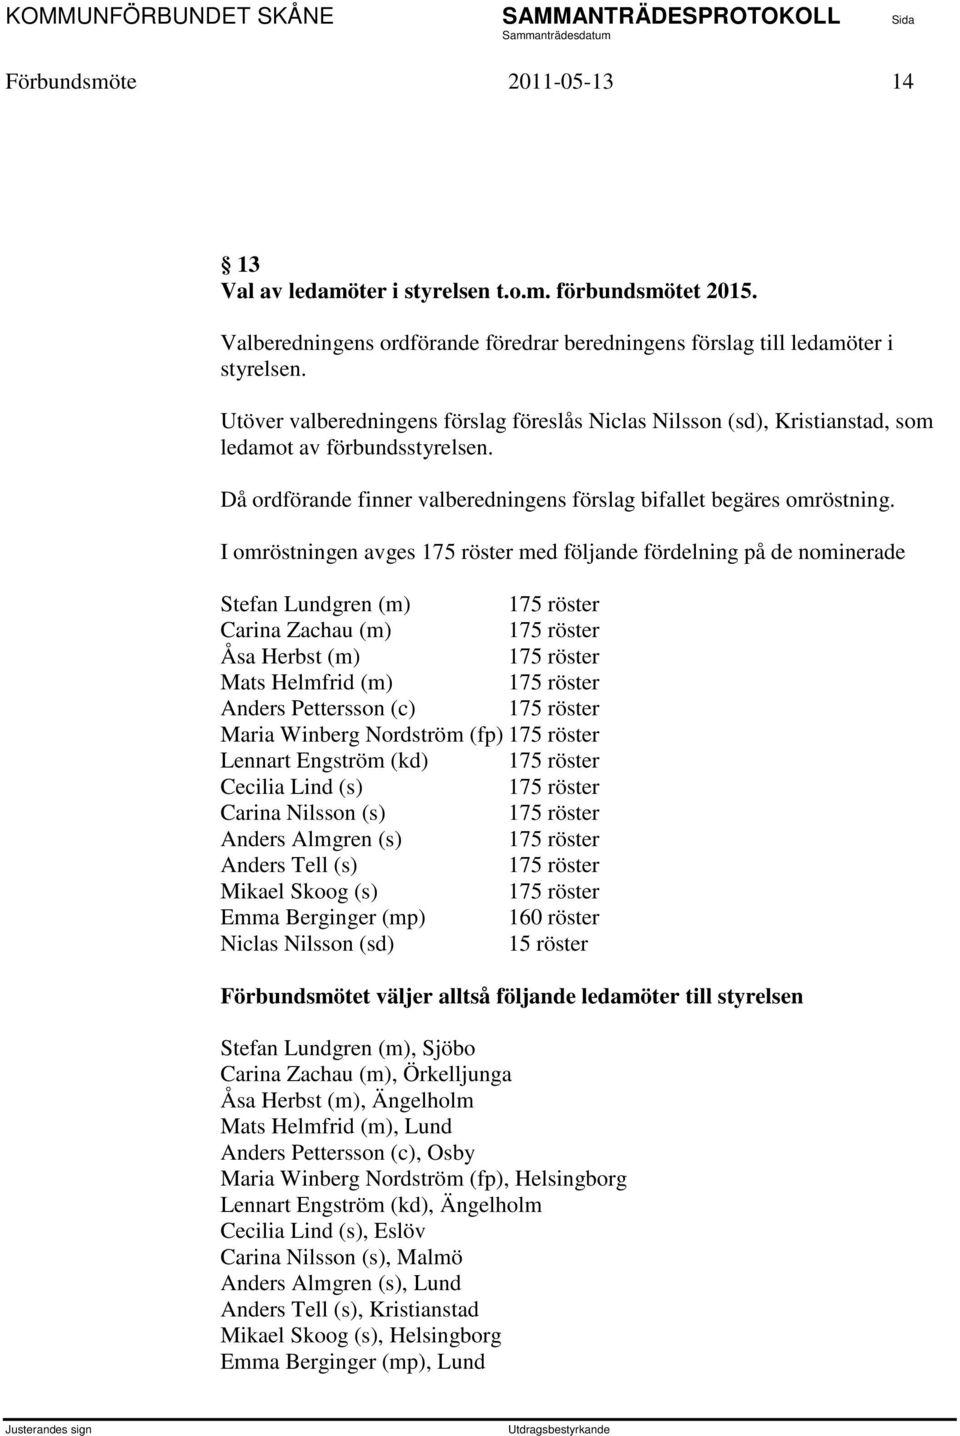 I omröstningen avges 175 röster med följande fördelning på de nominerade Stefan Lundgren (m) 175 röster Carina Zachau (m) 175 röster Åsa Herbst (m) 175 röster Mats Helmfrid (m) 175 röster Anders